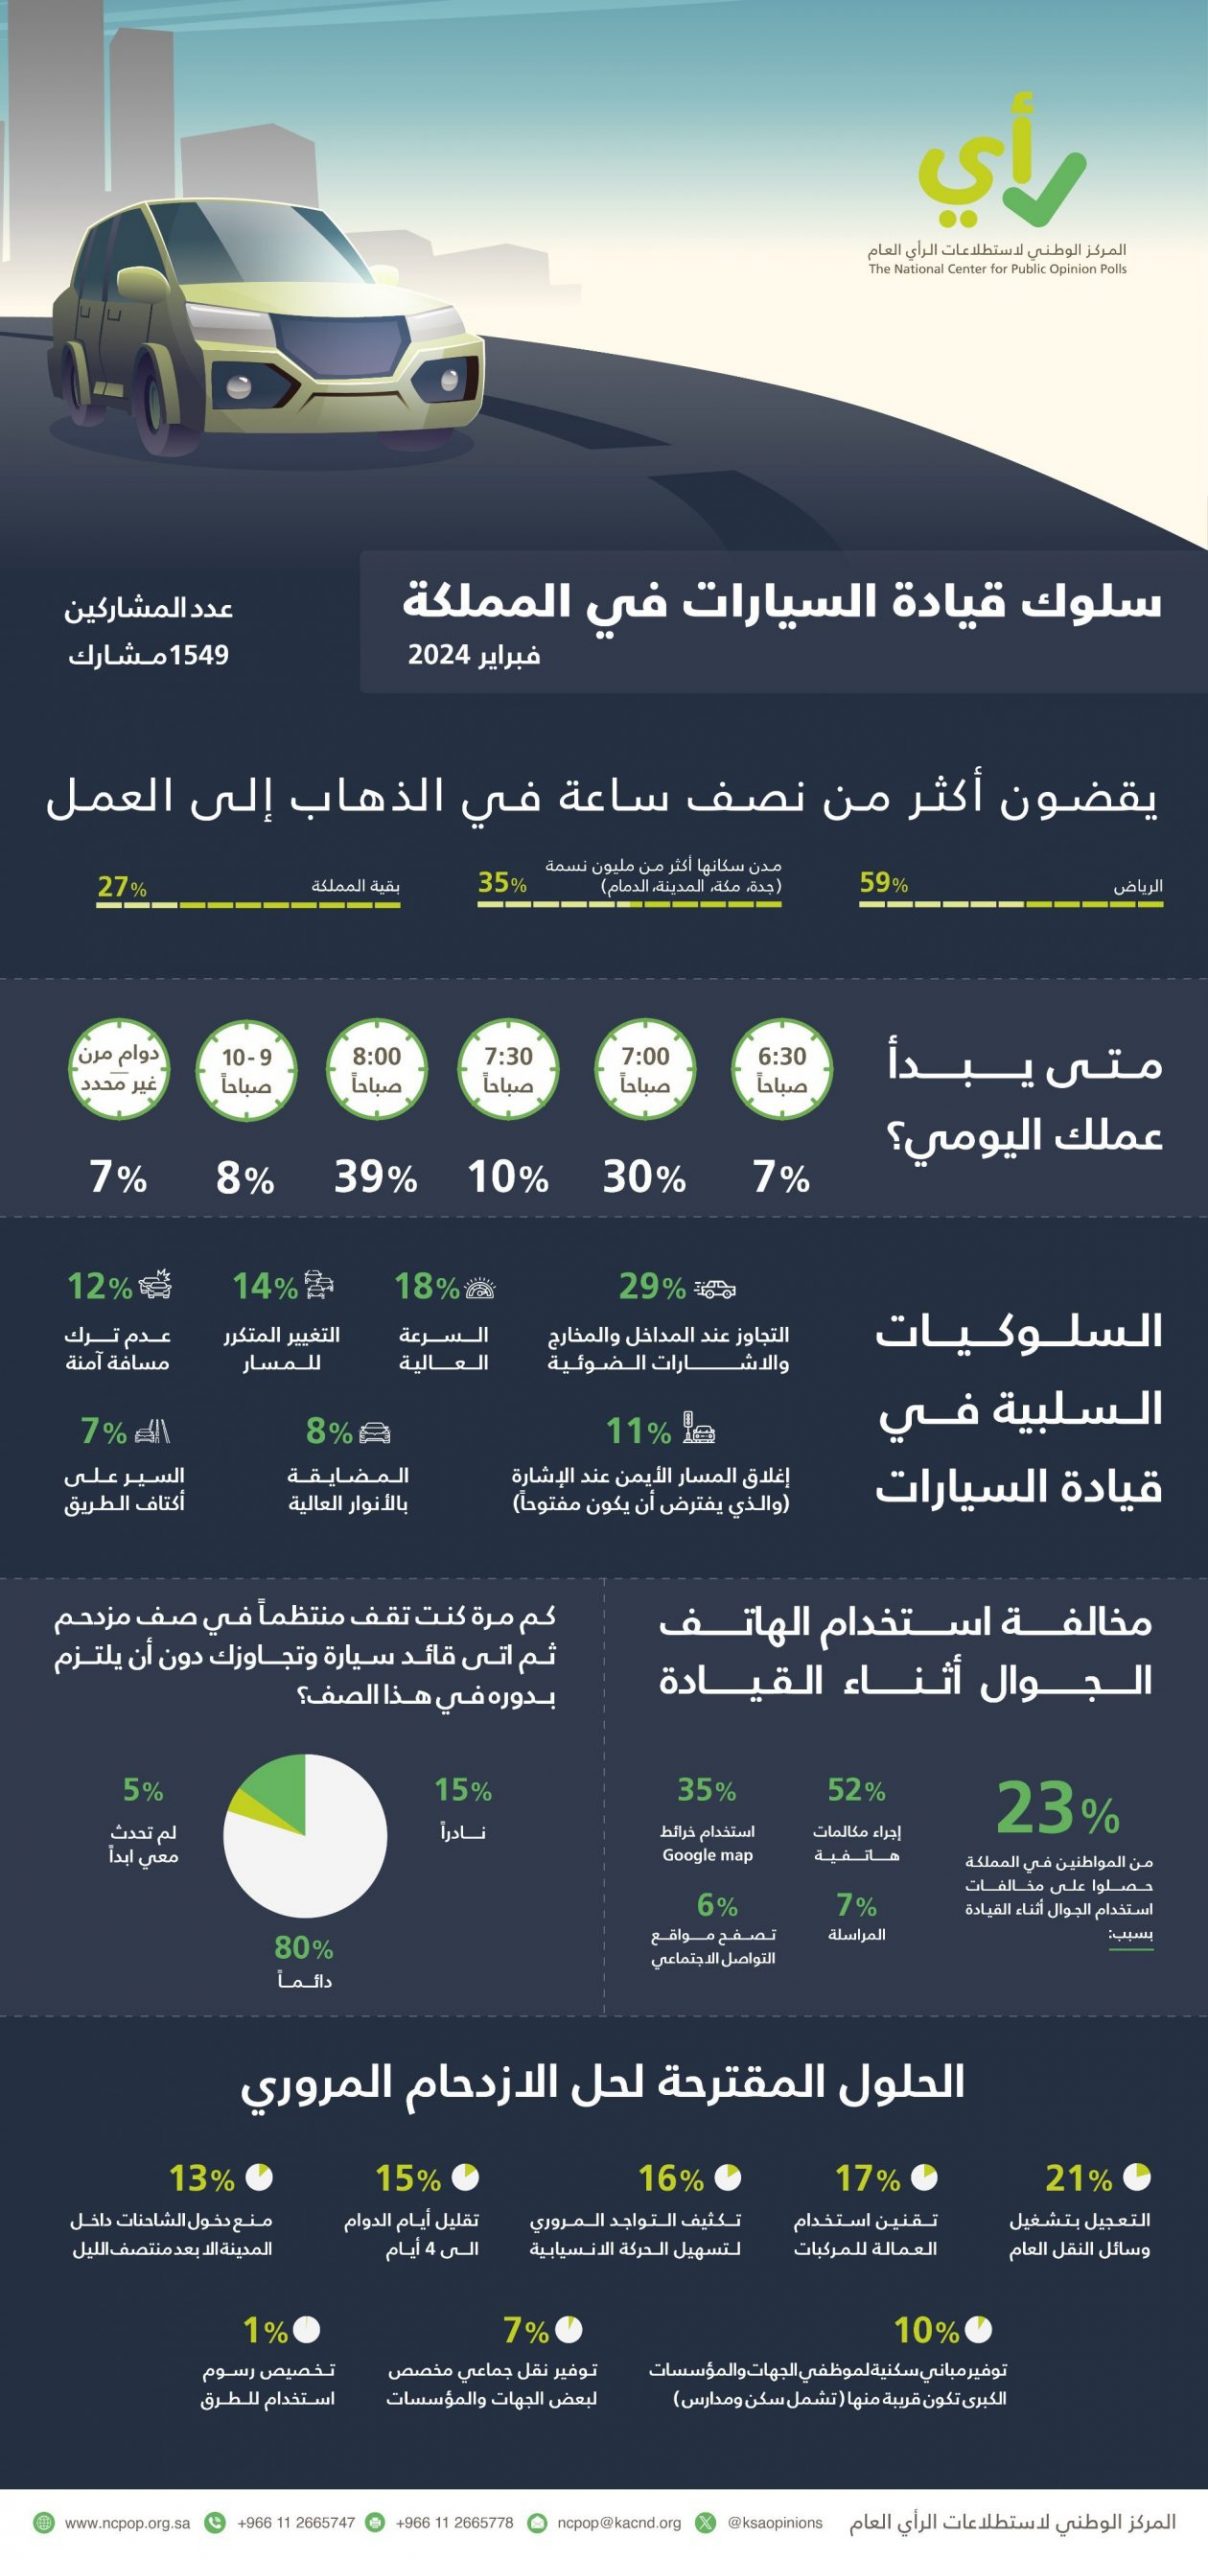 "استطلاع": 59% من سكان الرياض يستغرقون أكثر من نصف ساعة للانتقال لأعمالهم 12